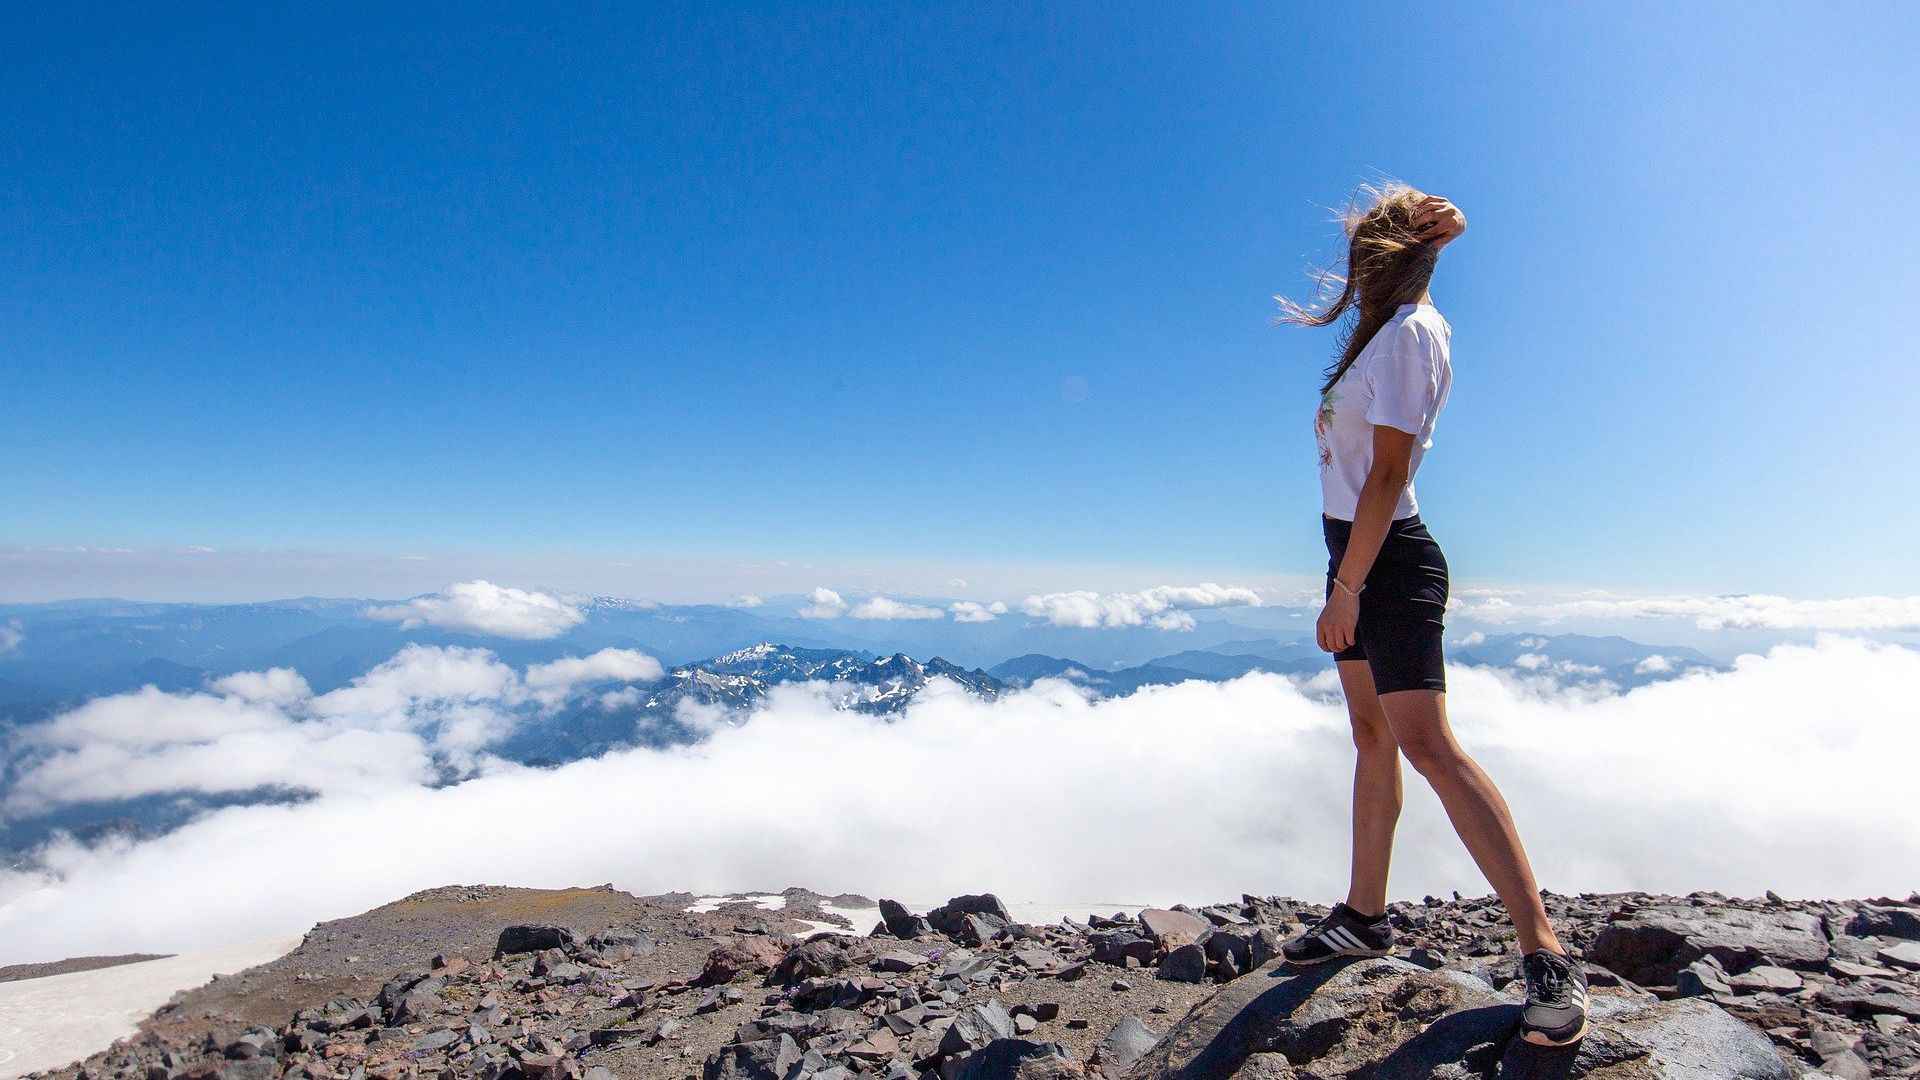 登上云雾缭绕的山顶的欧美运动美女